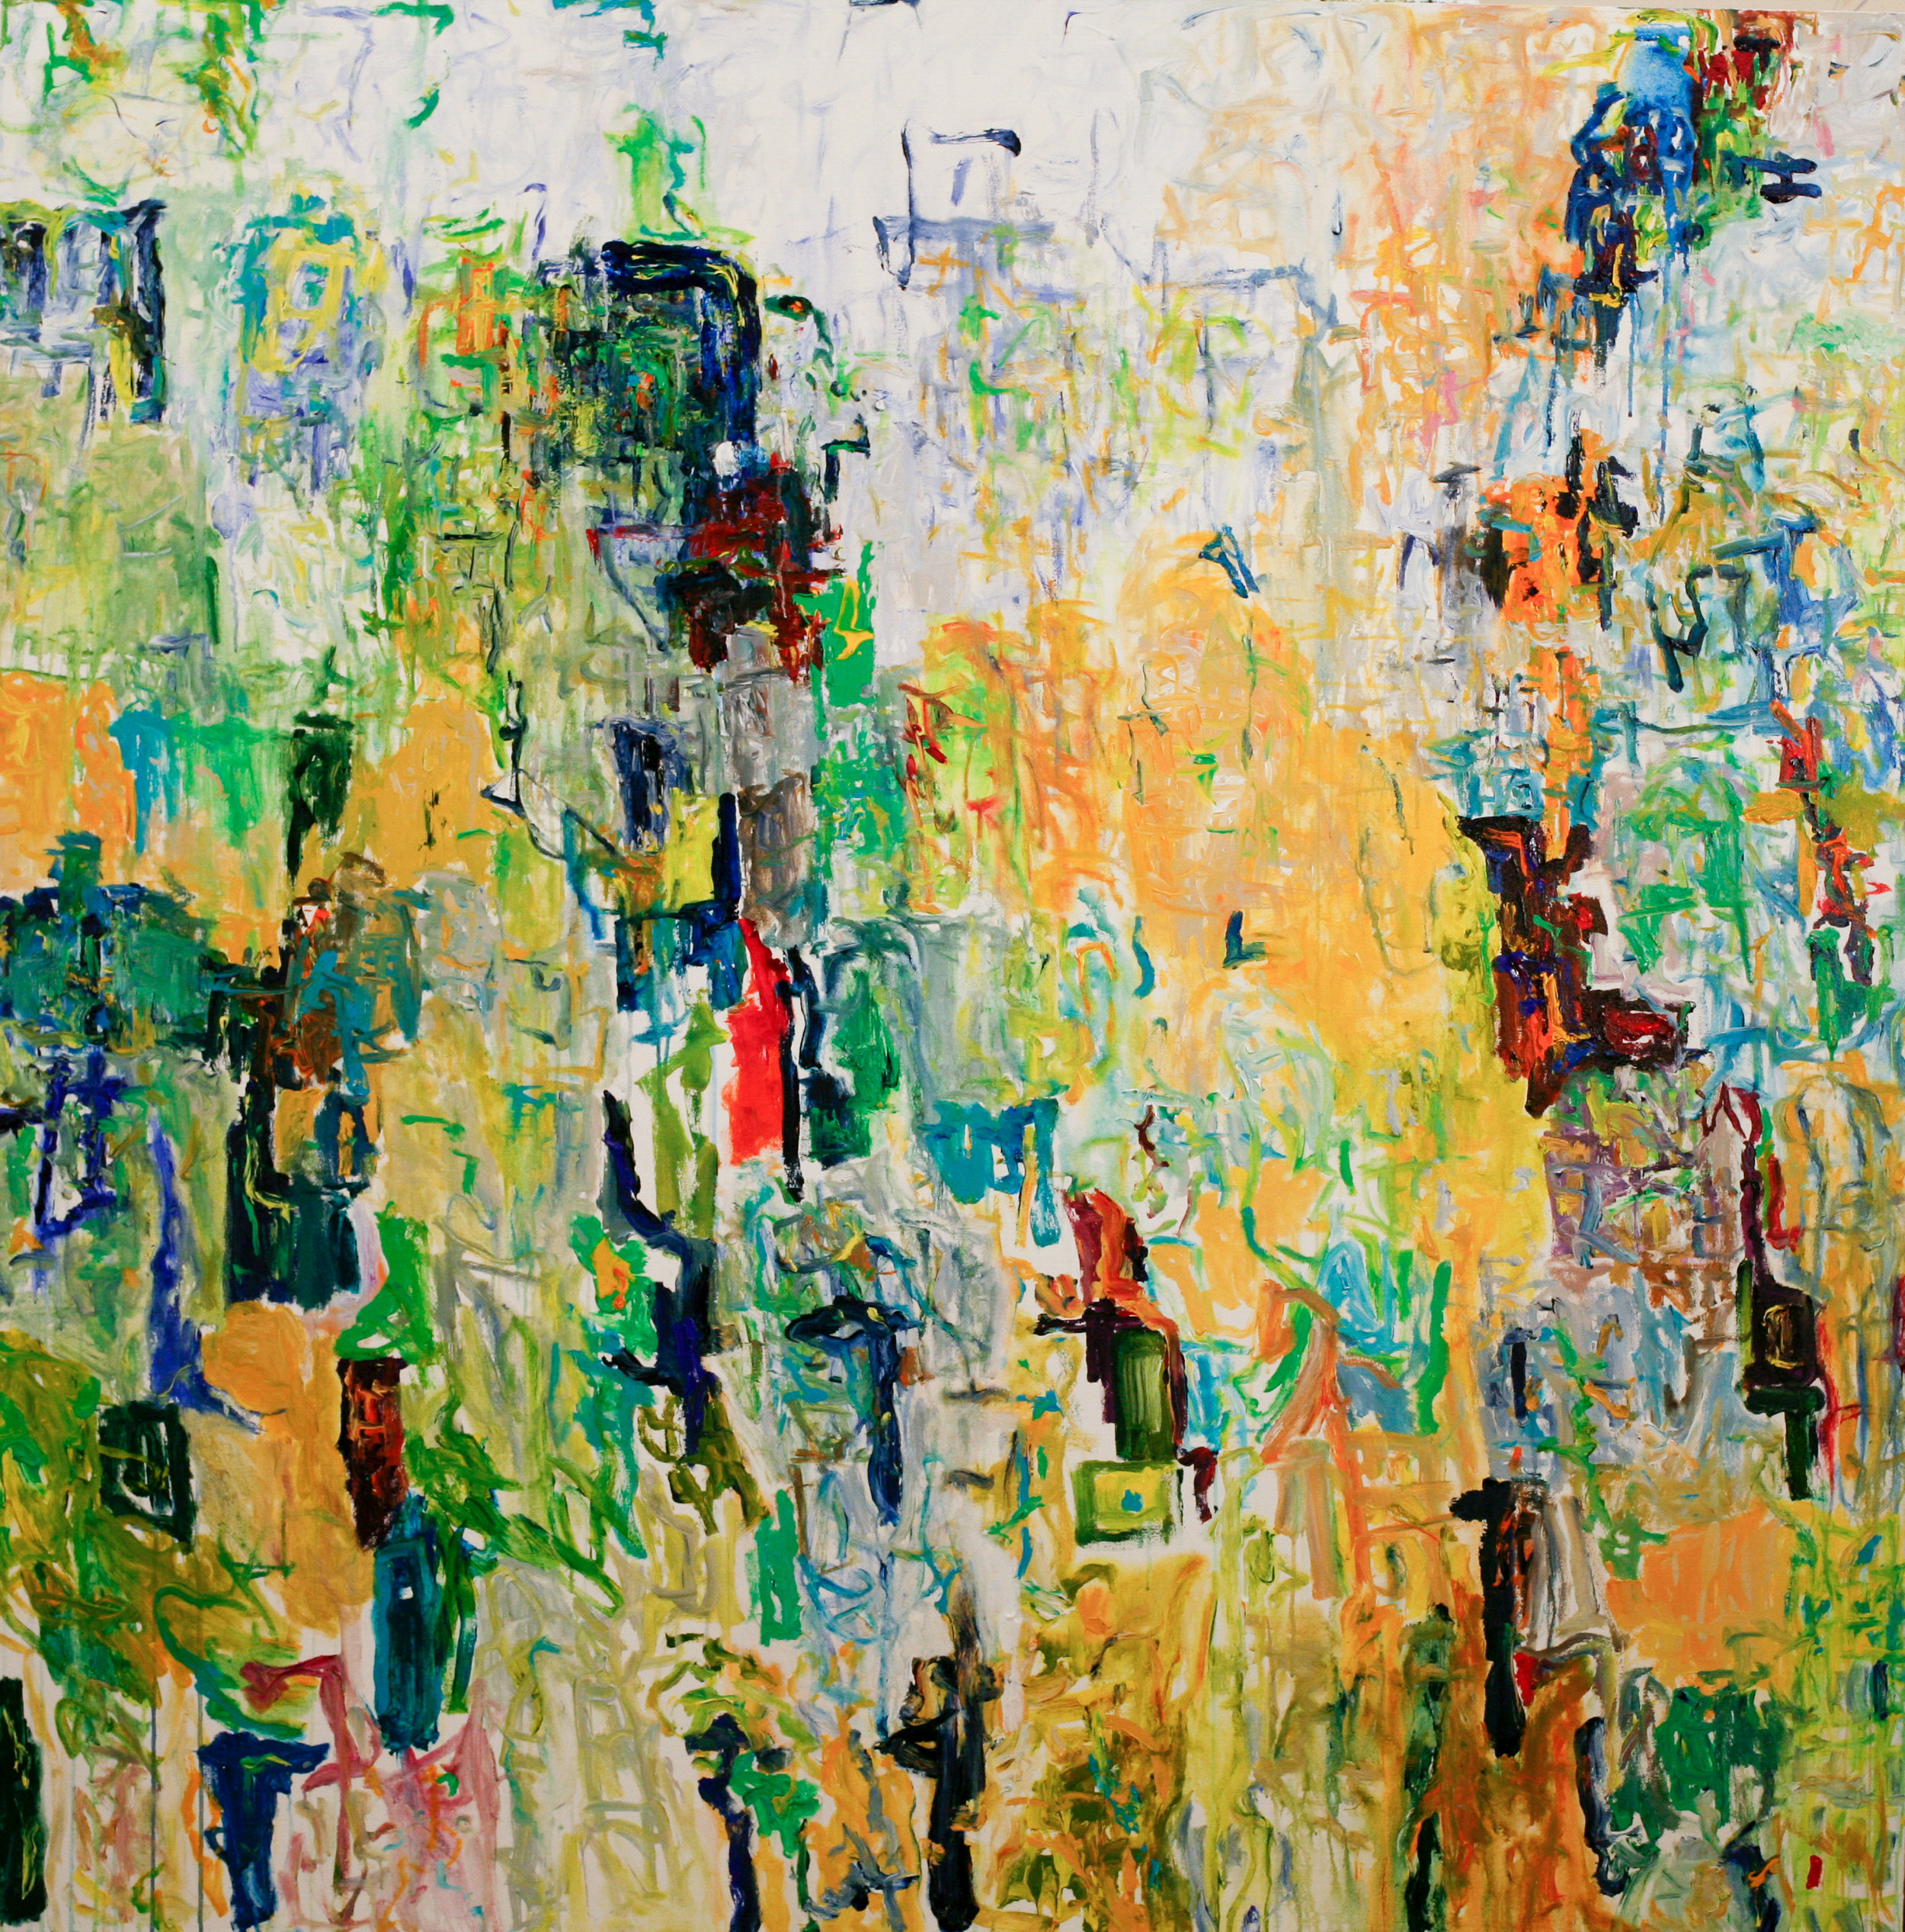 "Untitled", 72"x 72", acrylic on canvas, (Feb 27, 2019)